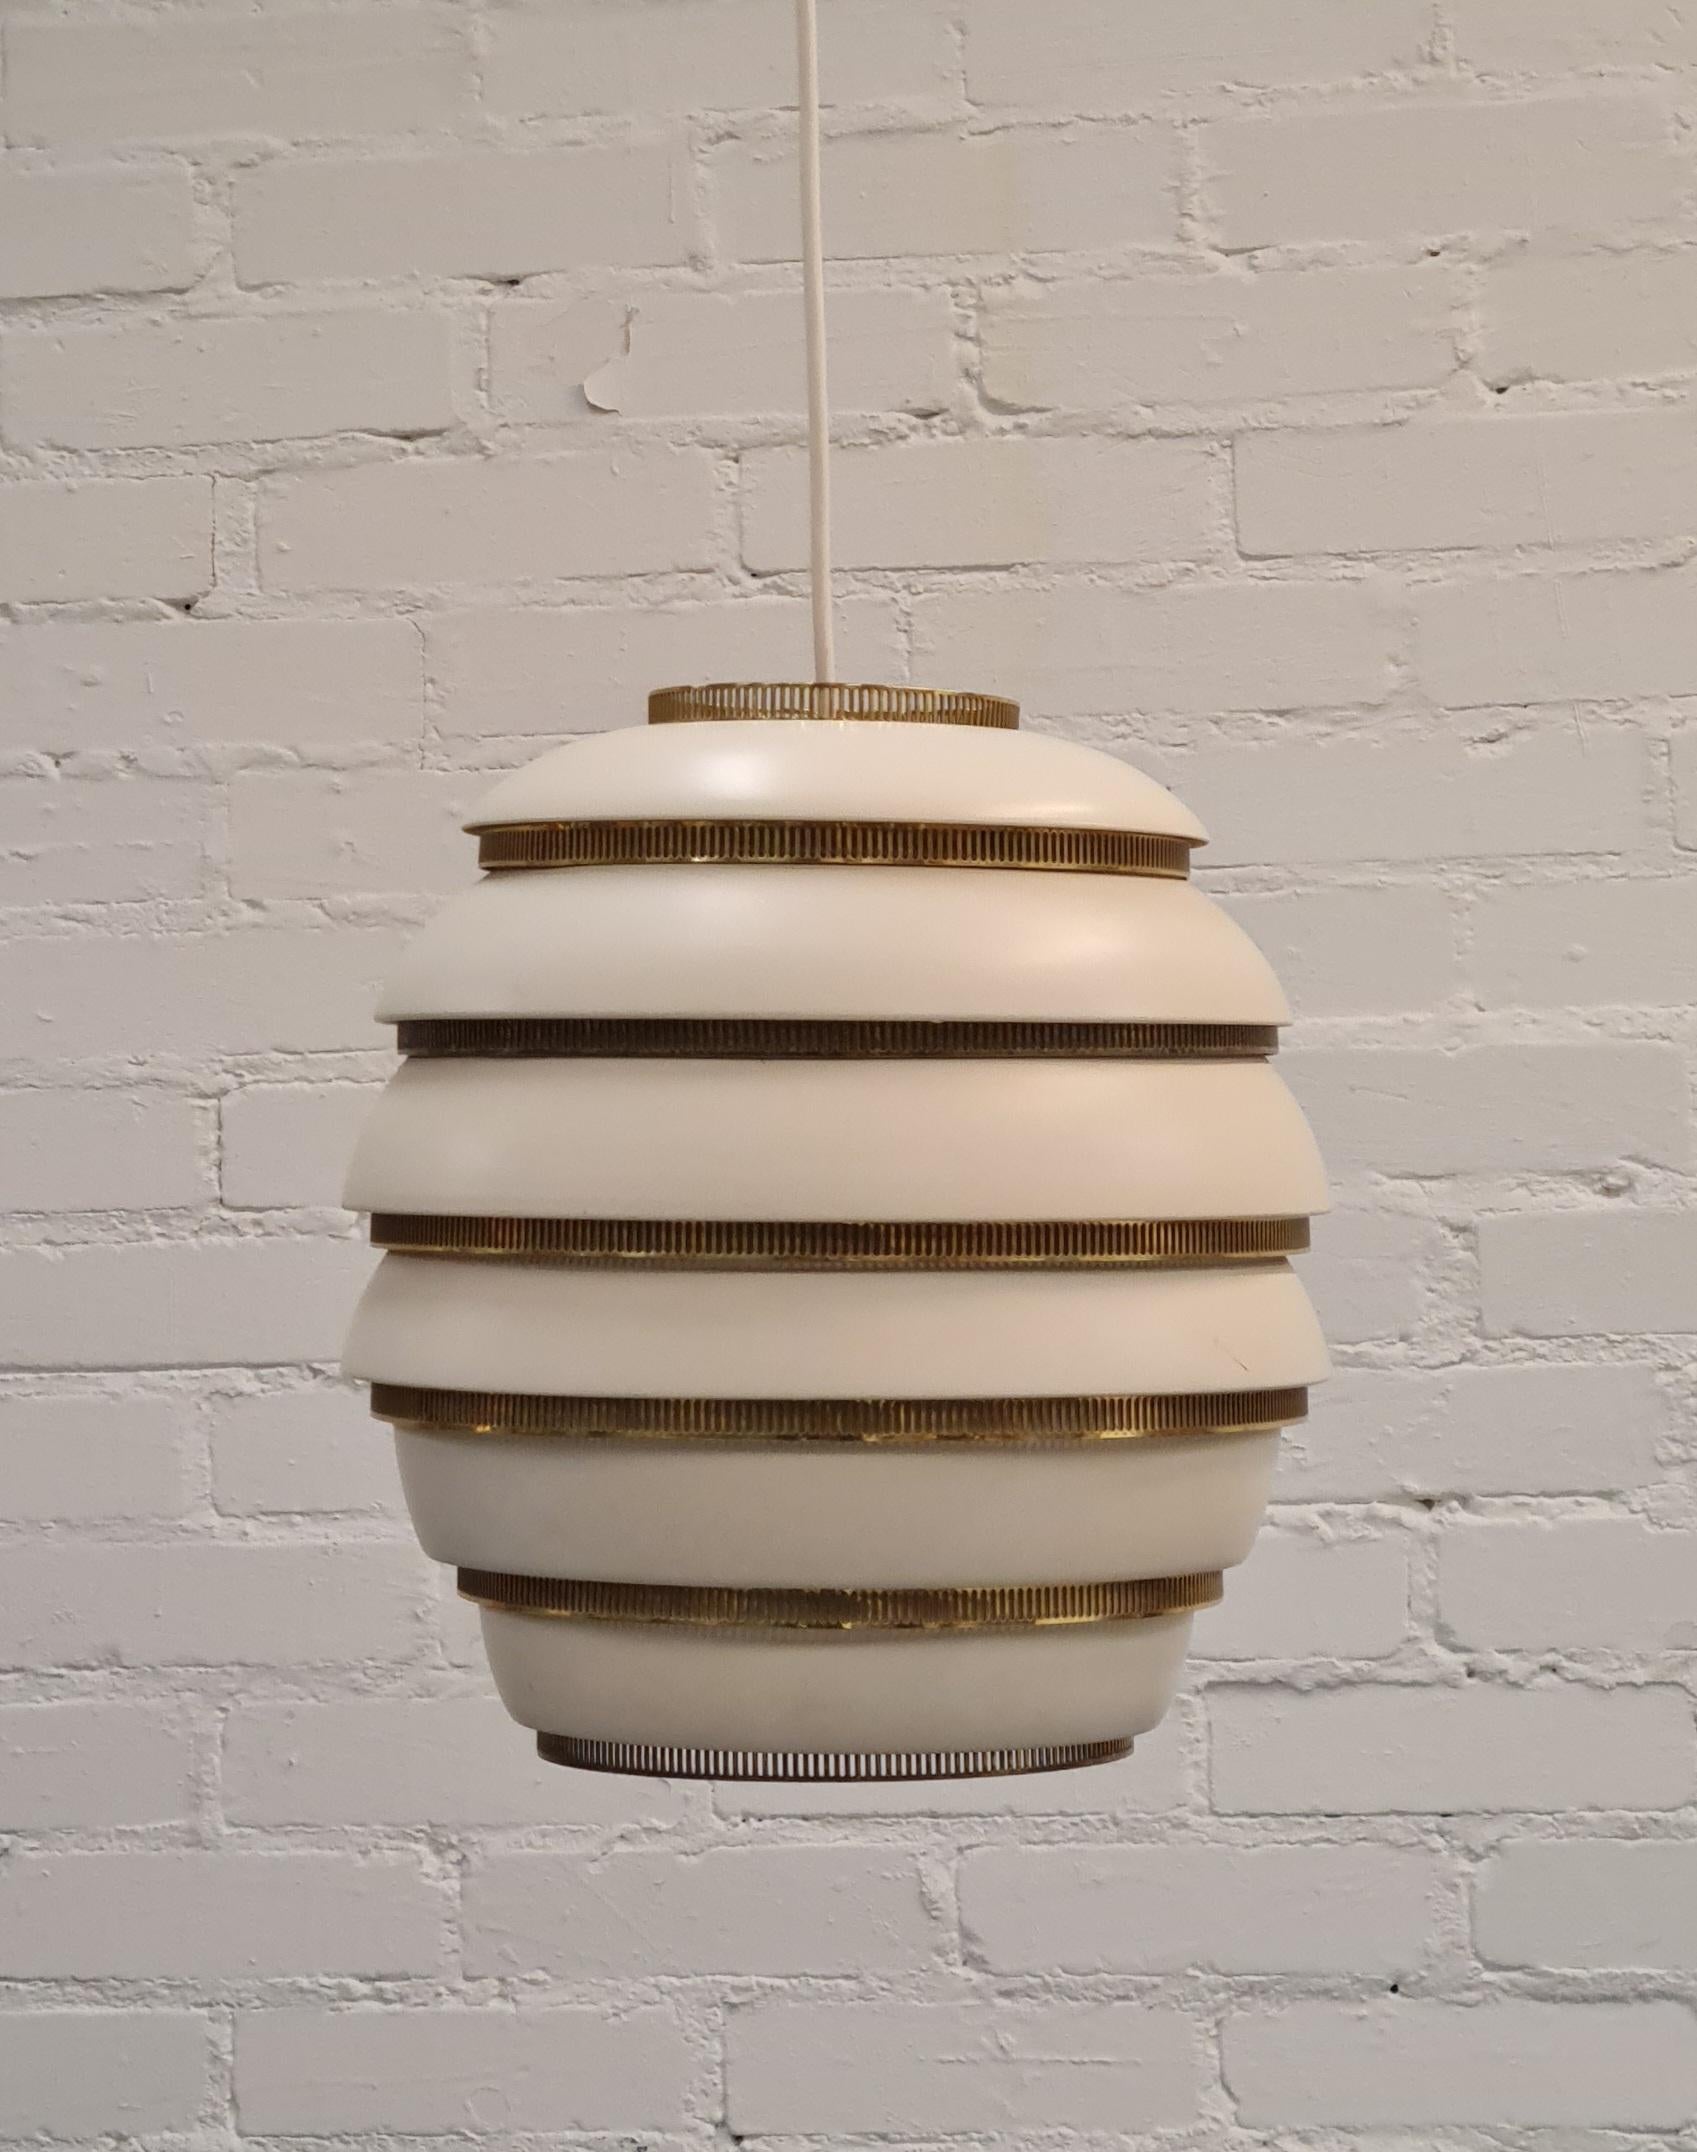 Il s'agit de l'un des designs-Light les plus emblématiques d'Alvar Aalto. Il a été conçu pour la première fois en 1953. Le design est incroyablement simple et s'inspire de la Nature en imitant les ruches suspendues à un arbre. Il est léger, on a